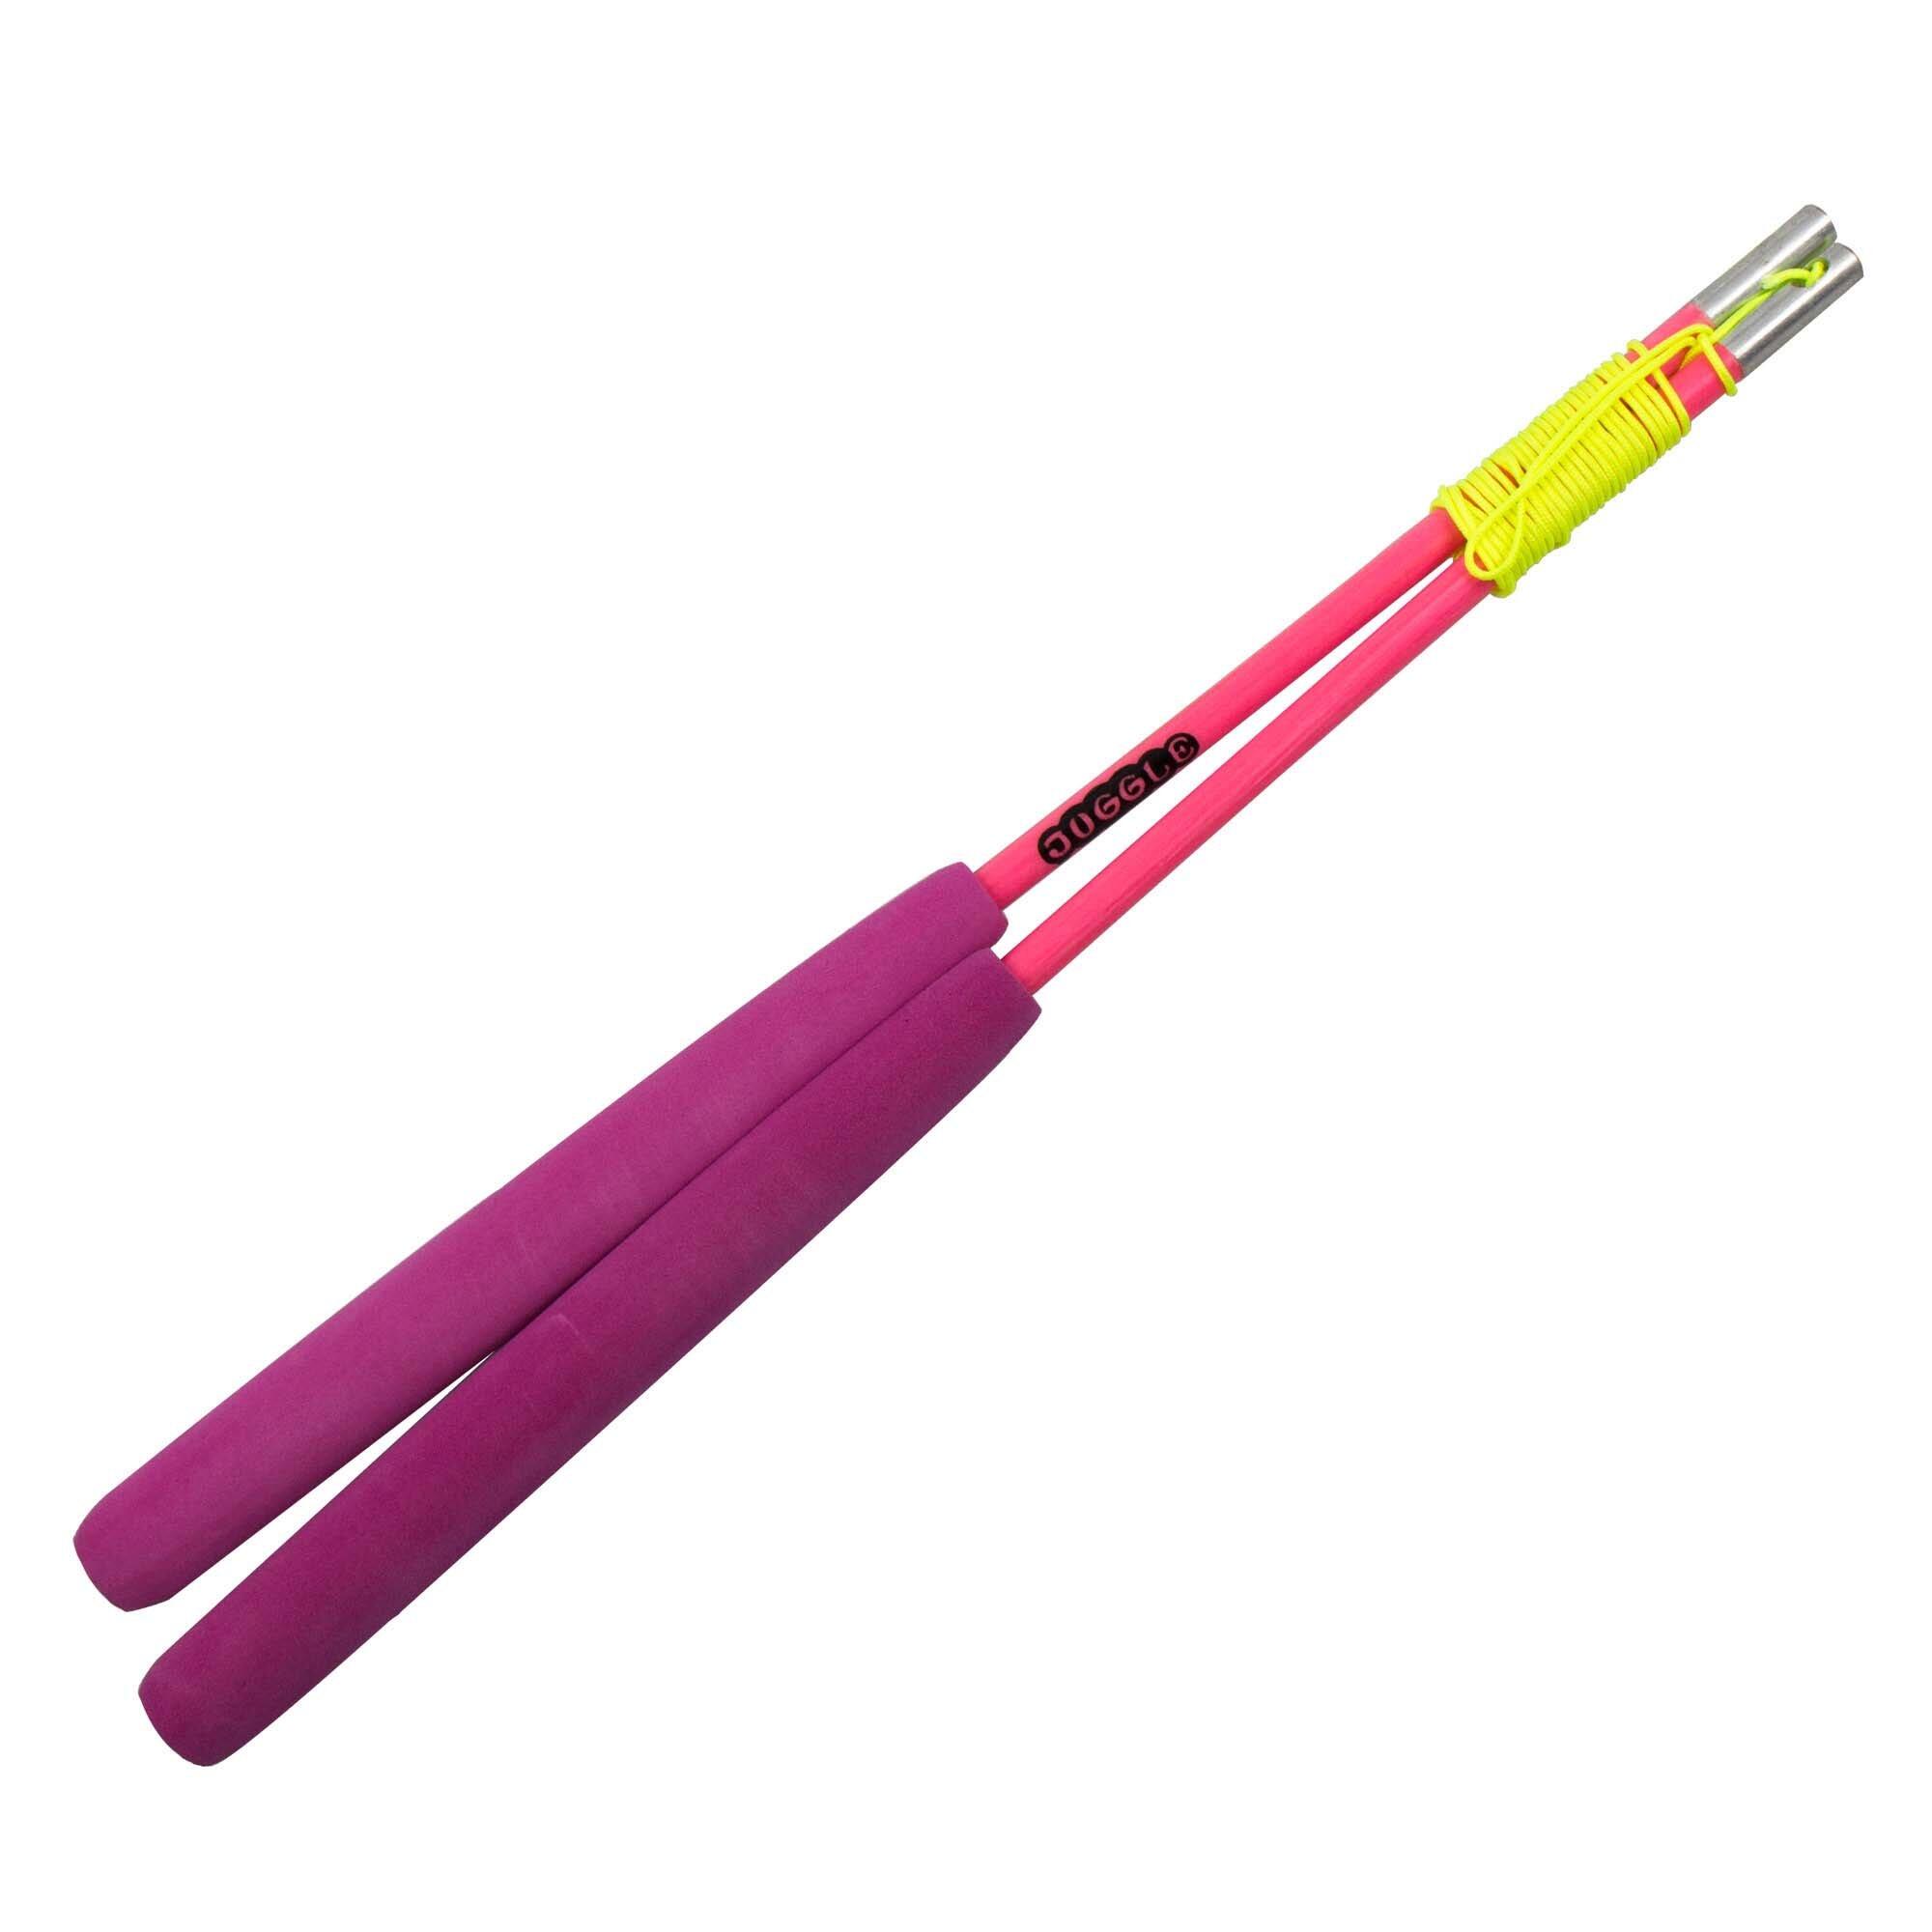 FIRETOYS Pink Juggle Dream Superglass Grind Diabolo Handsticks